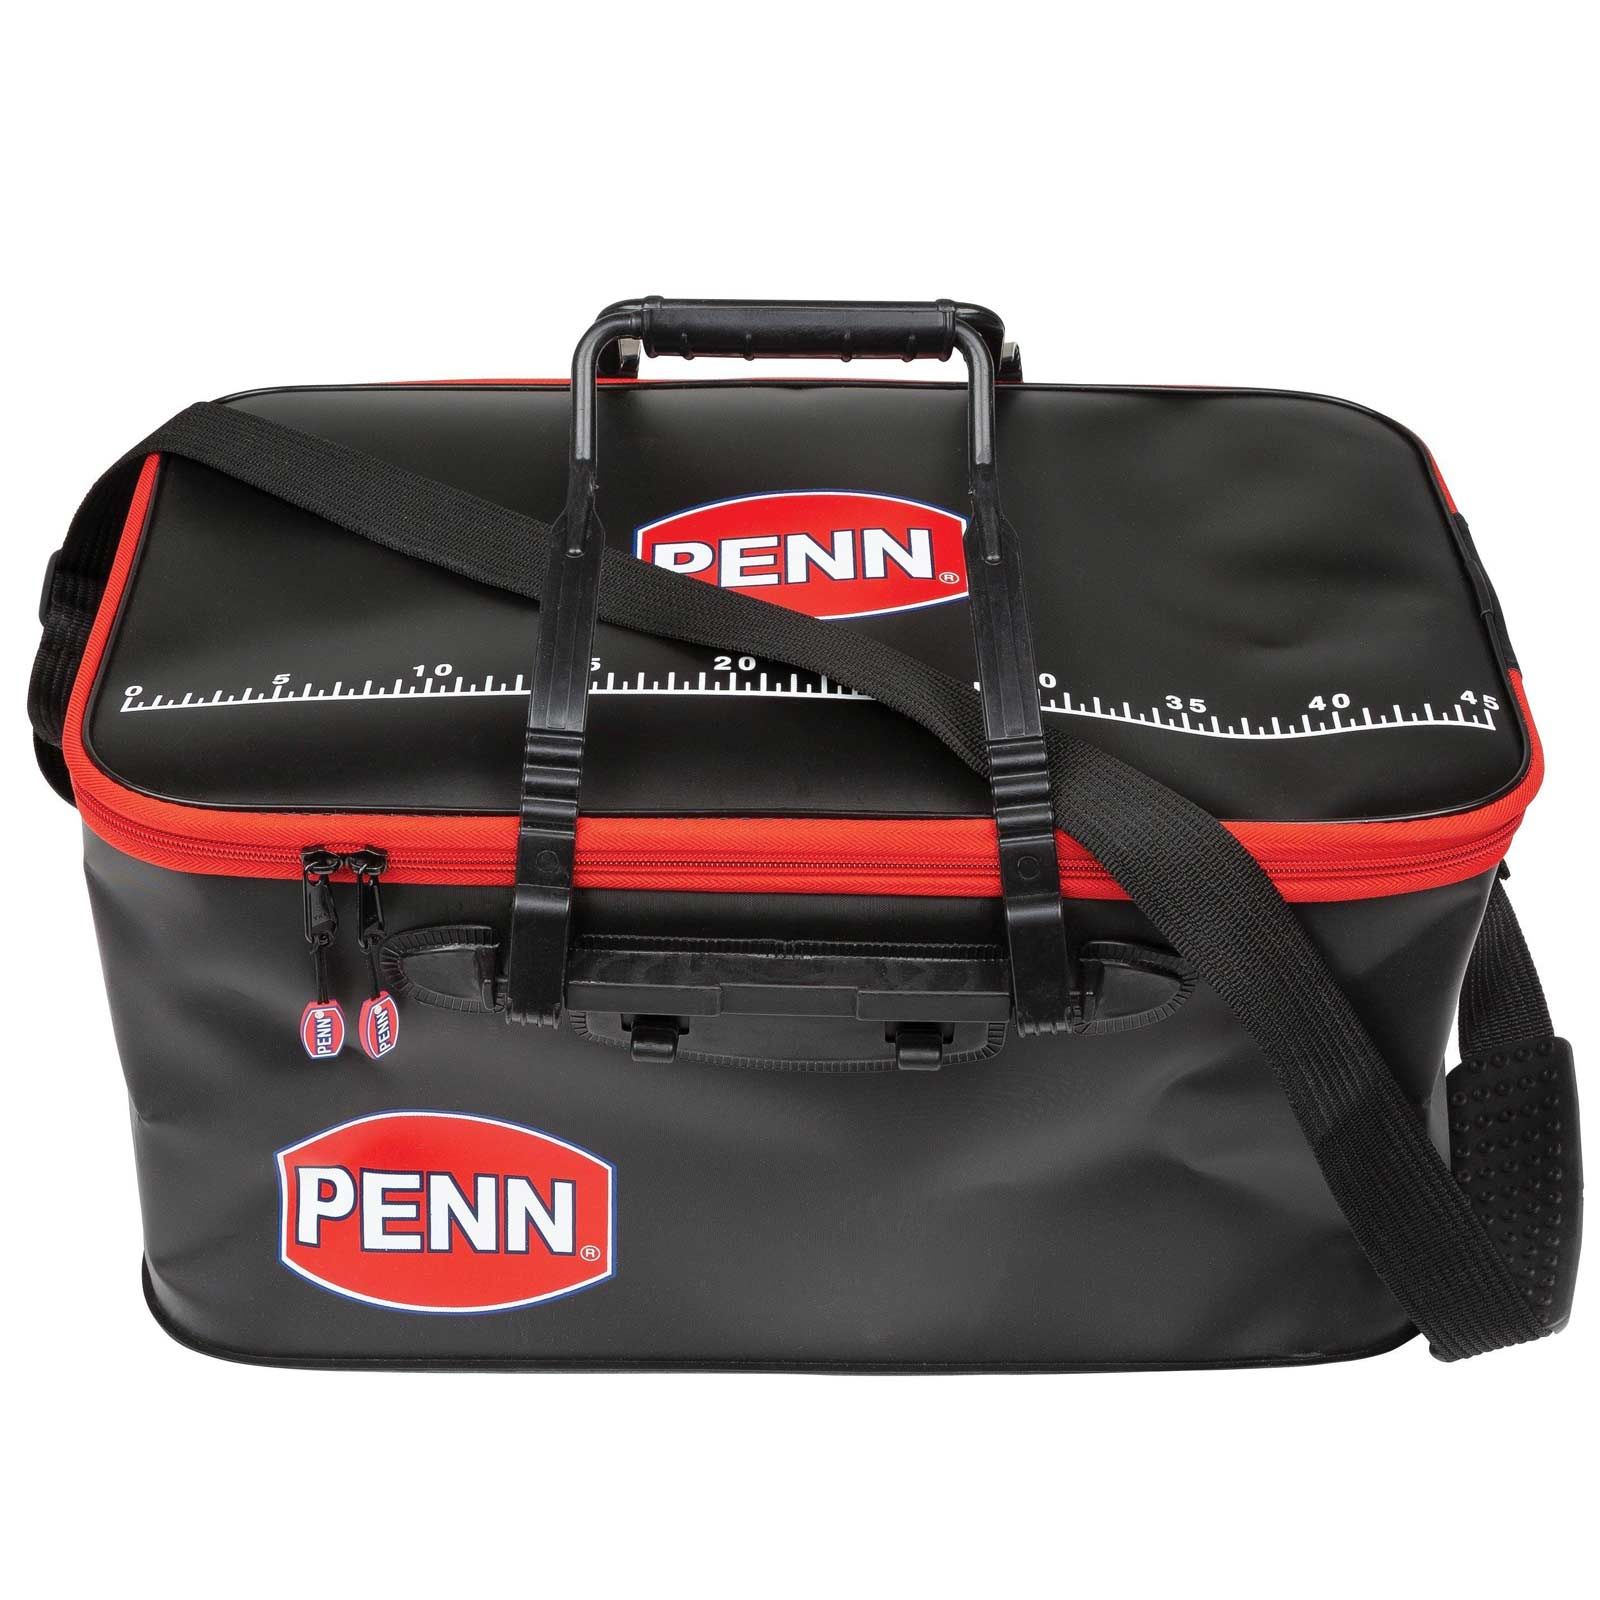 Penn Foldable EVA Boat Bag – Meeresangeln Angeltasche